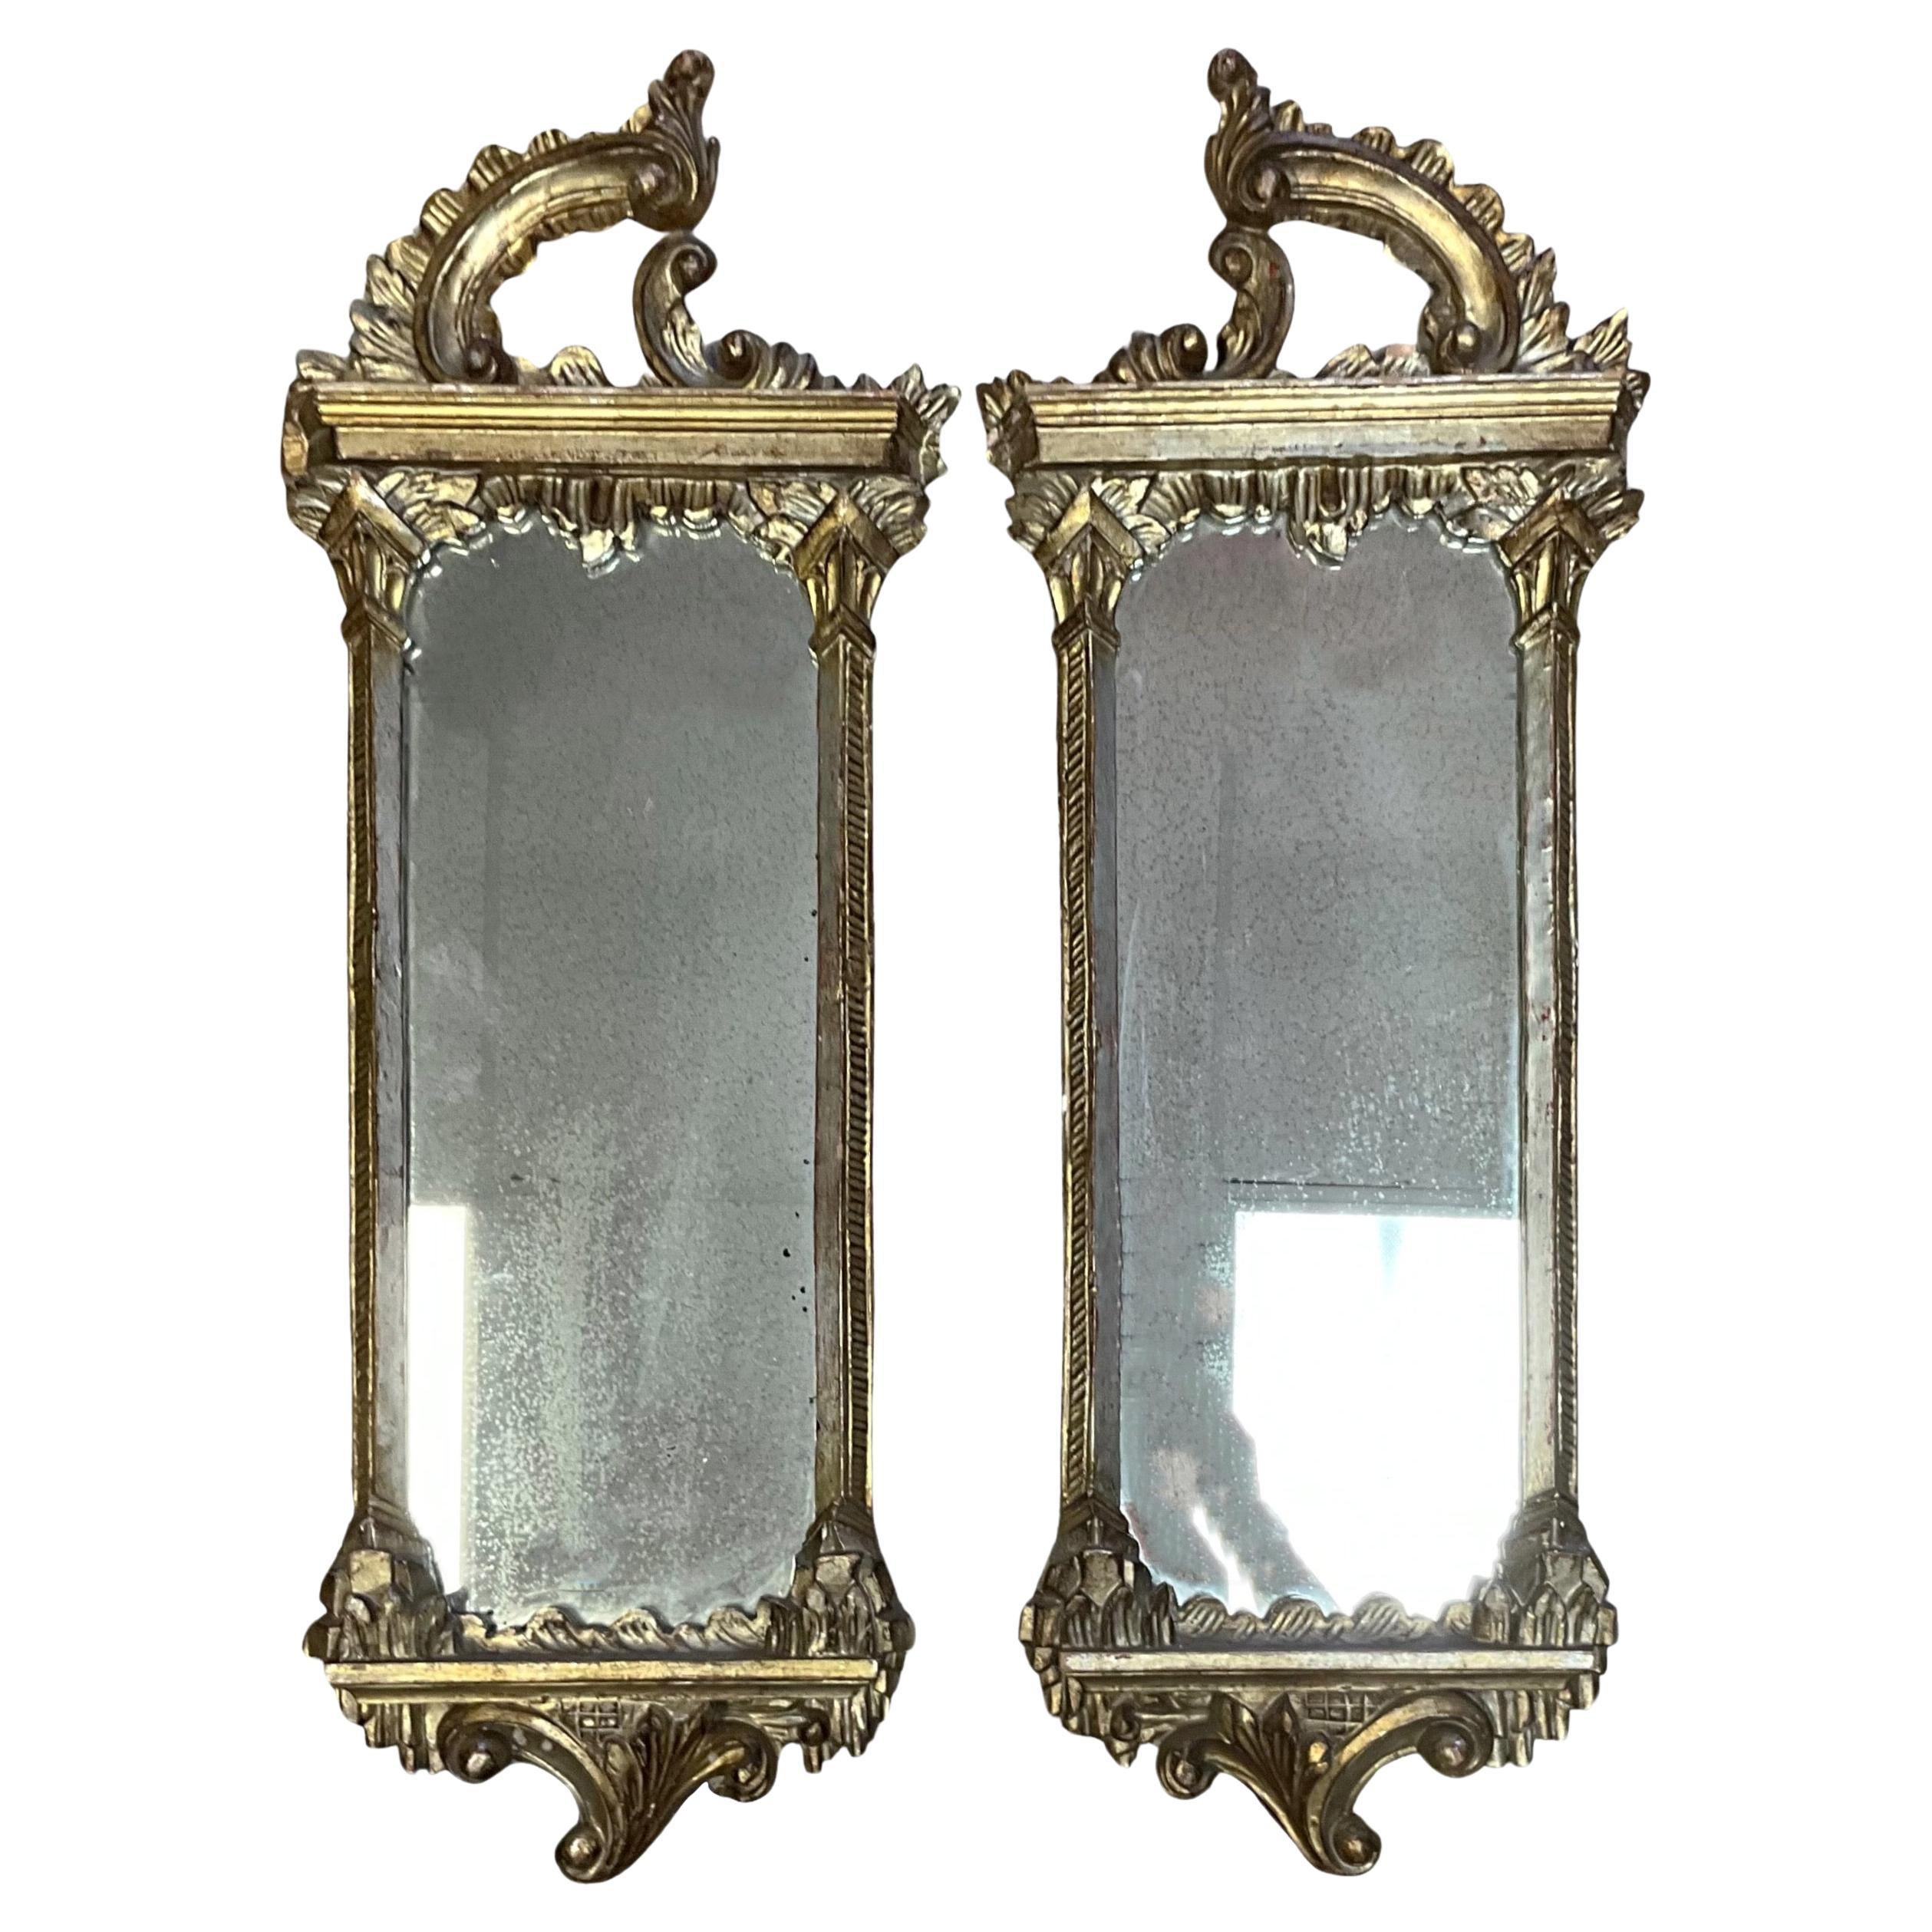 1930er Jahre Italienisch Chinesisch Chippendale Stil geschnitzt Silber Giltwood Spiegel - Paar 